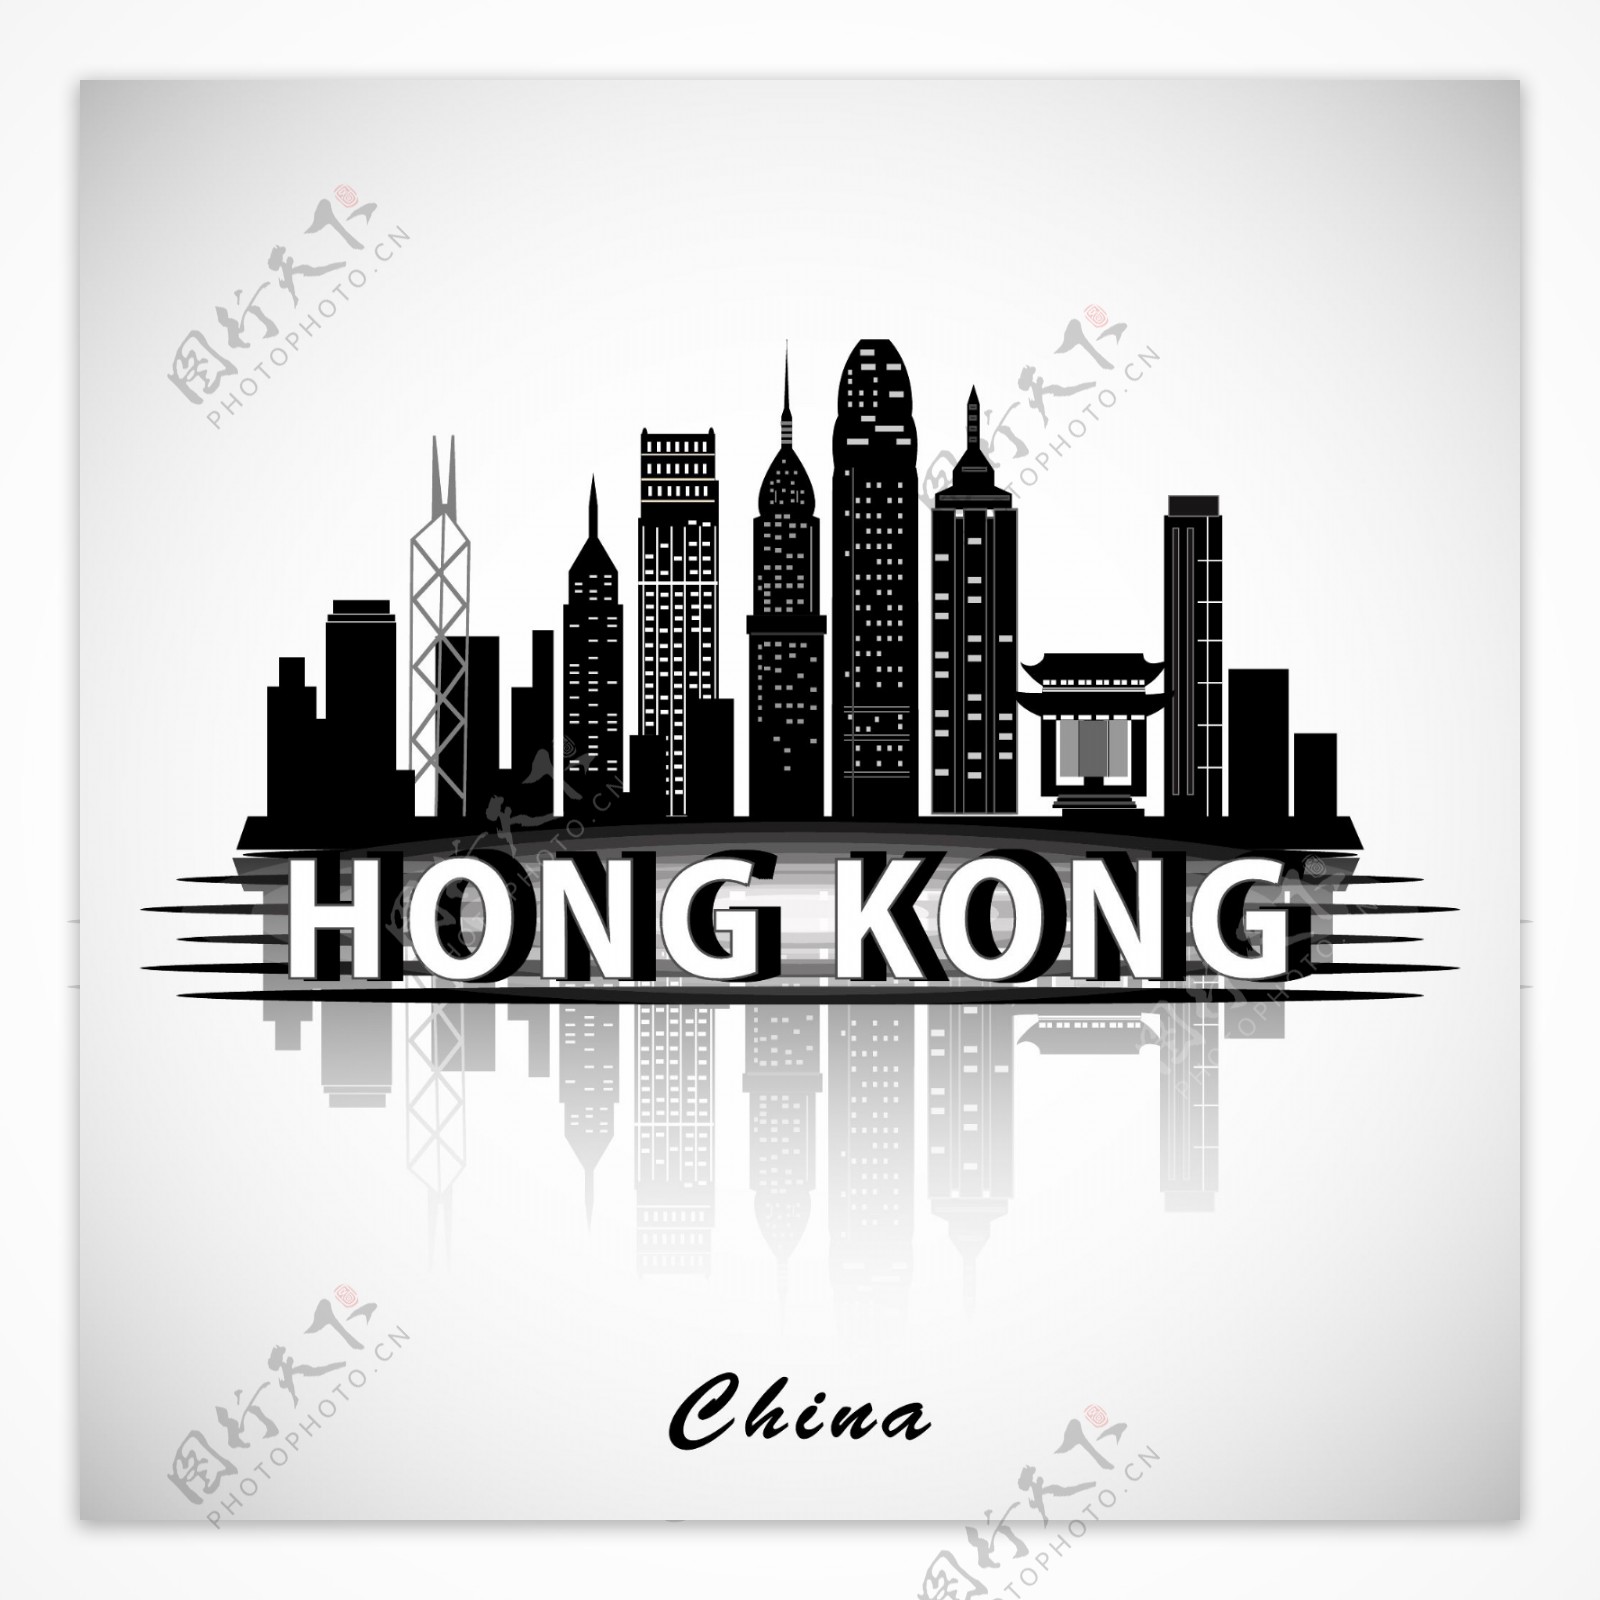 香港建筑群剪影图片